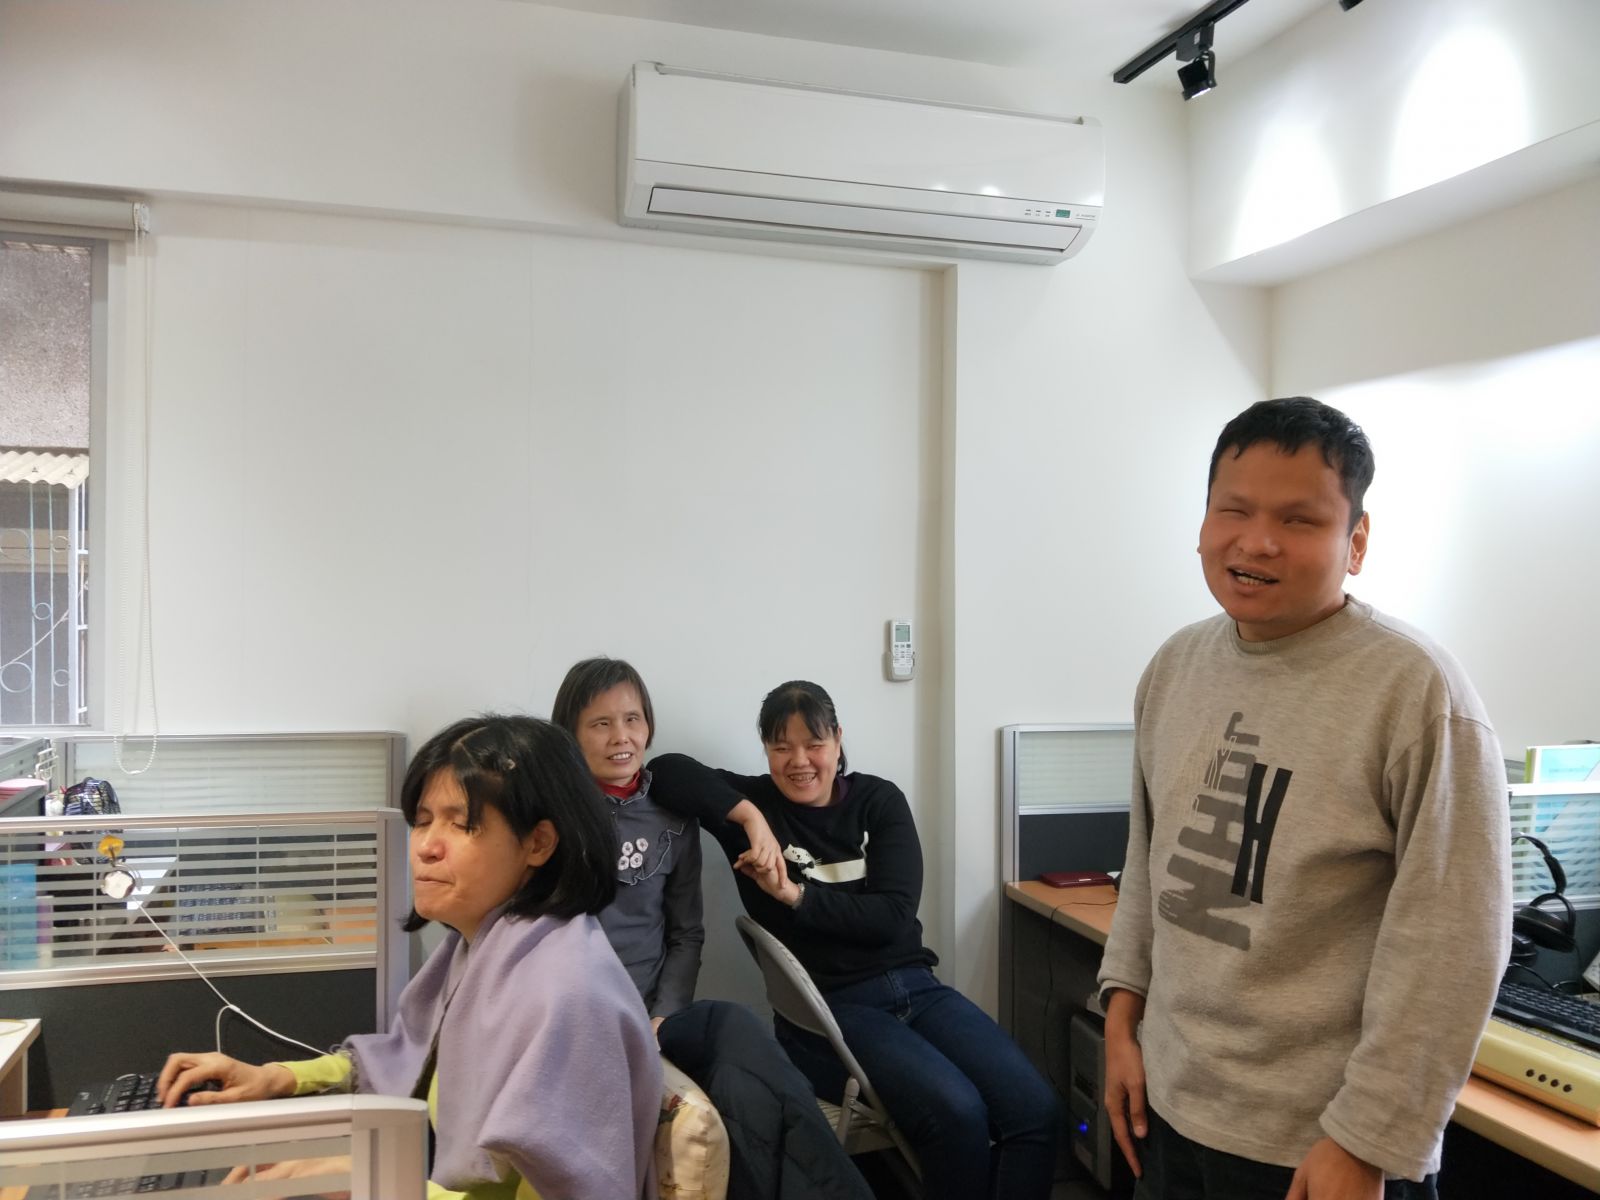 無障礙科技發展協會四位負責點譯校對的團隊，由右到左分別為俊宏、思樺、肅宓、秀媛。